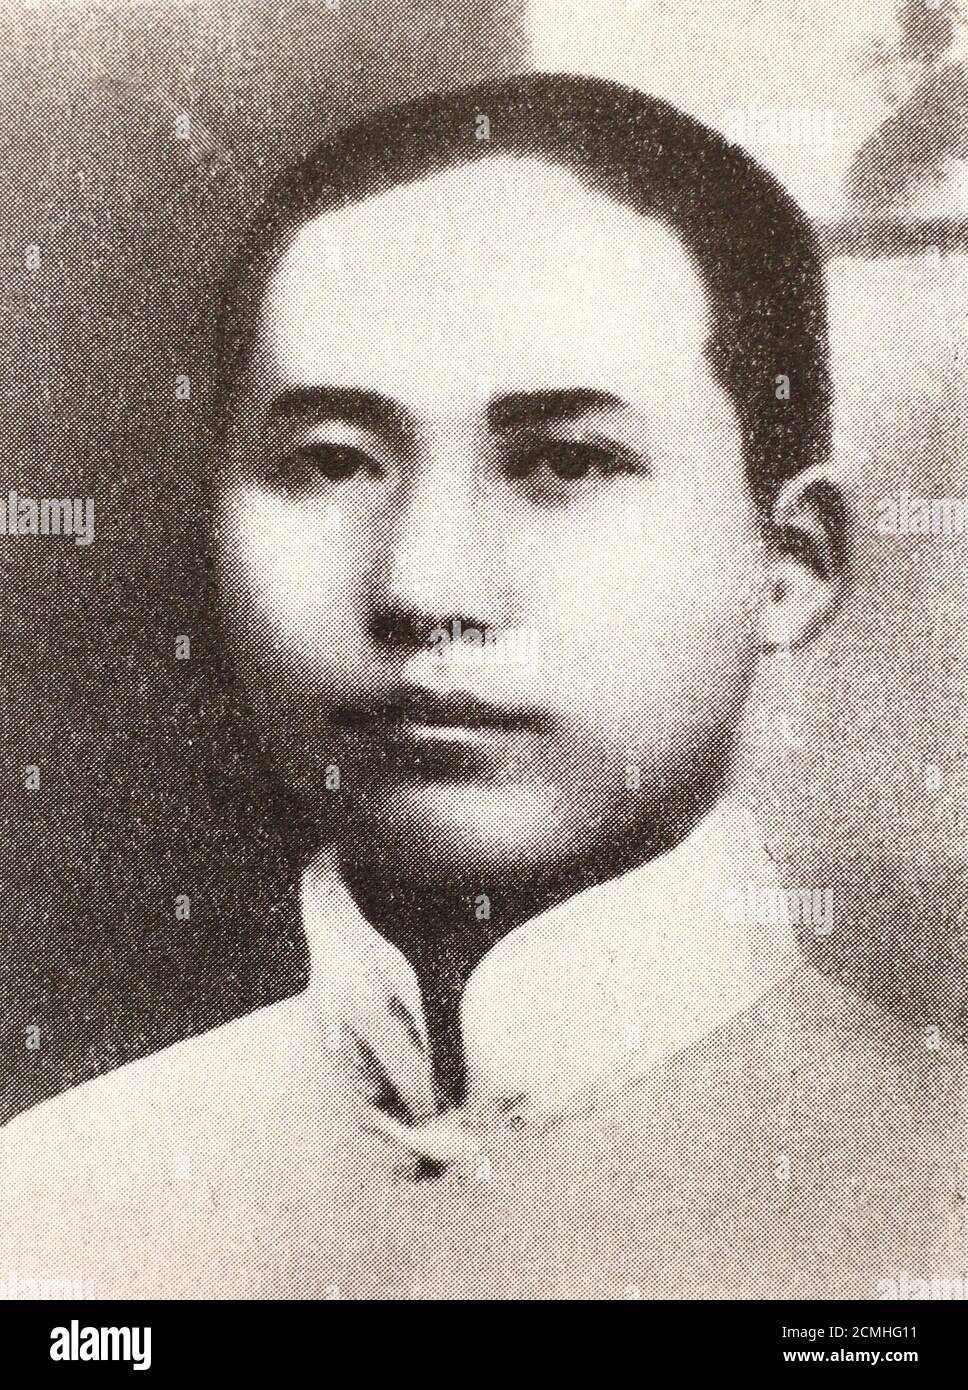 Mao Zedong (Mao, 26 dicembre 1893 – 9 settembre 1976) è stato un rivoluzionario comunista cinese, divenuto il padre fondatore della Repubblica popolare cinese (RPC). Che ha governato come presidente del Partito comunista cinese dalla sua fondazione nel 1949 fino alla sua morte nel 1976. Ideologicamente un marxista-leninista, le sue teorie, le strategie militari e le politiche politiche sono collettivamente note come Maoismo. Foto Stock